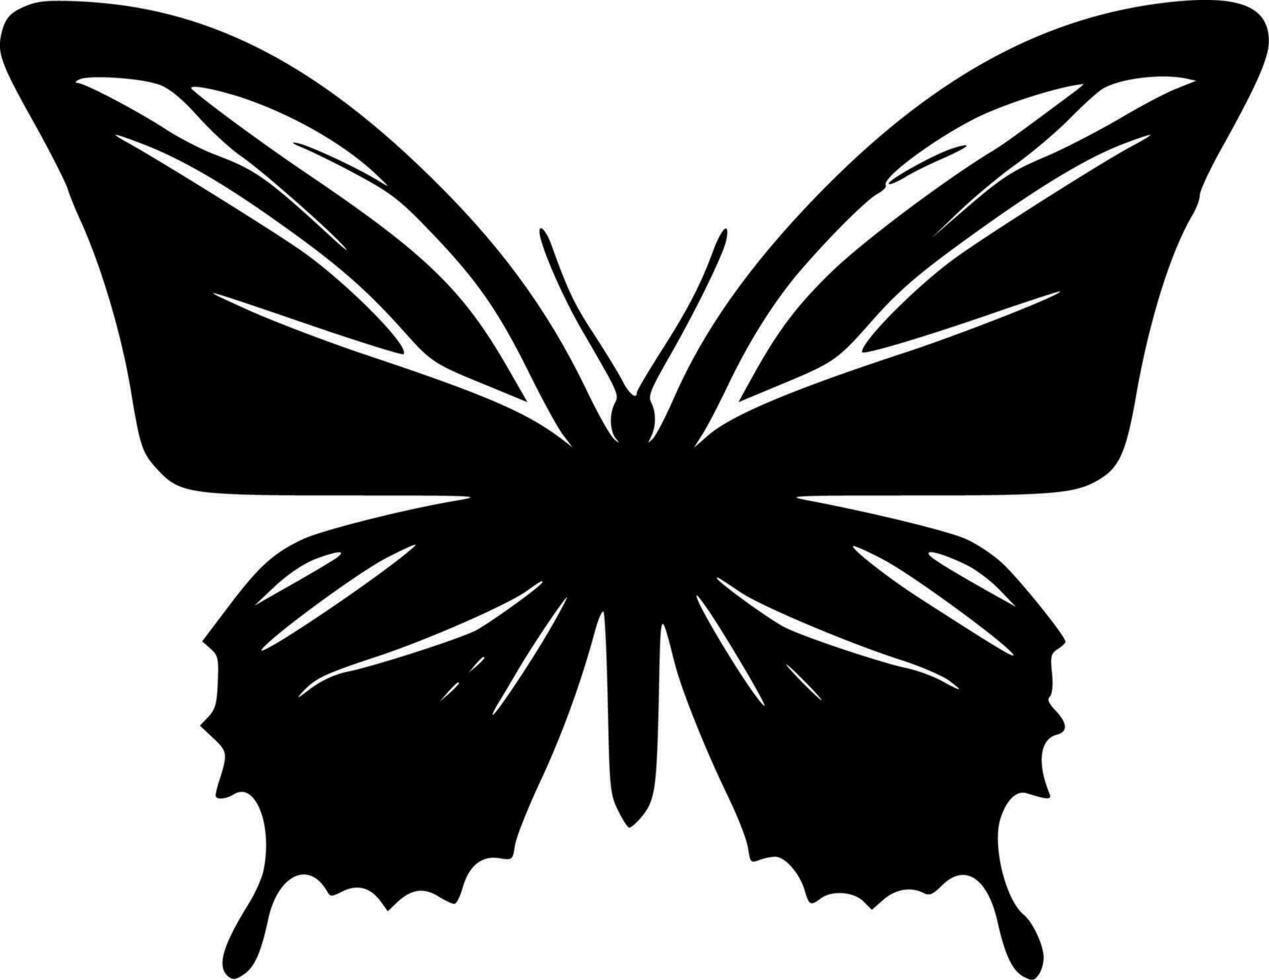 fjäril, minimalistisk och enkel silhuett - vektor illustration